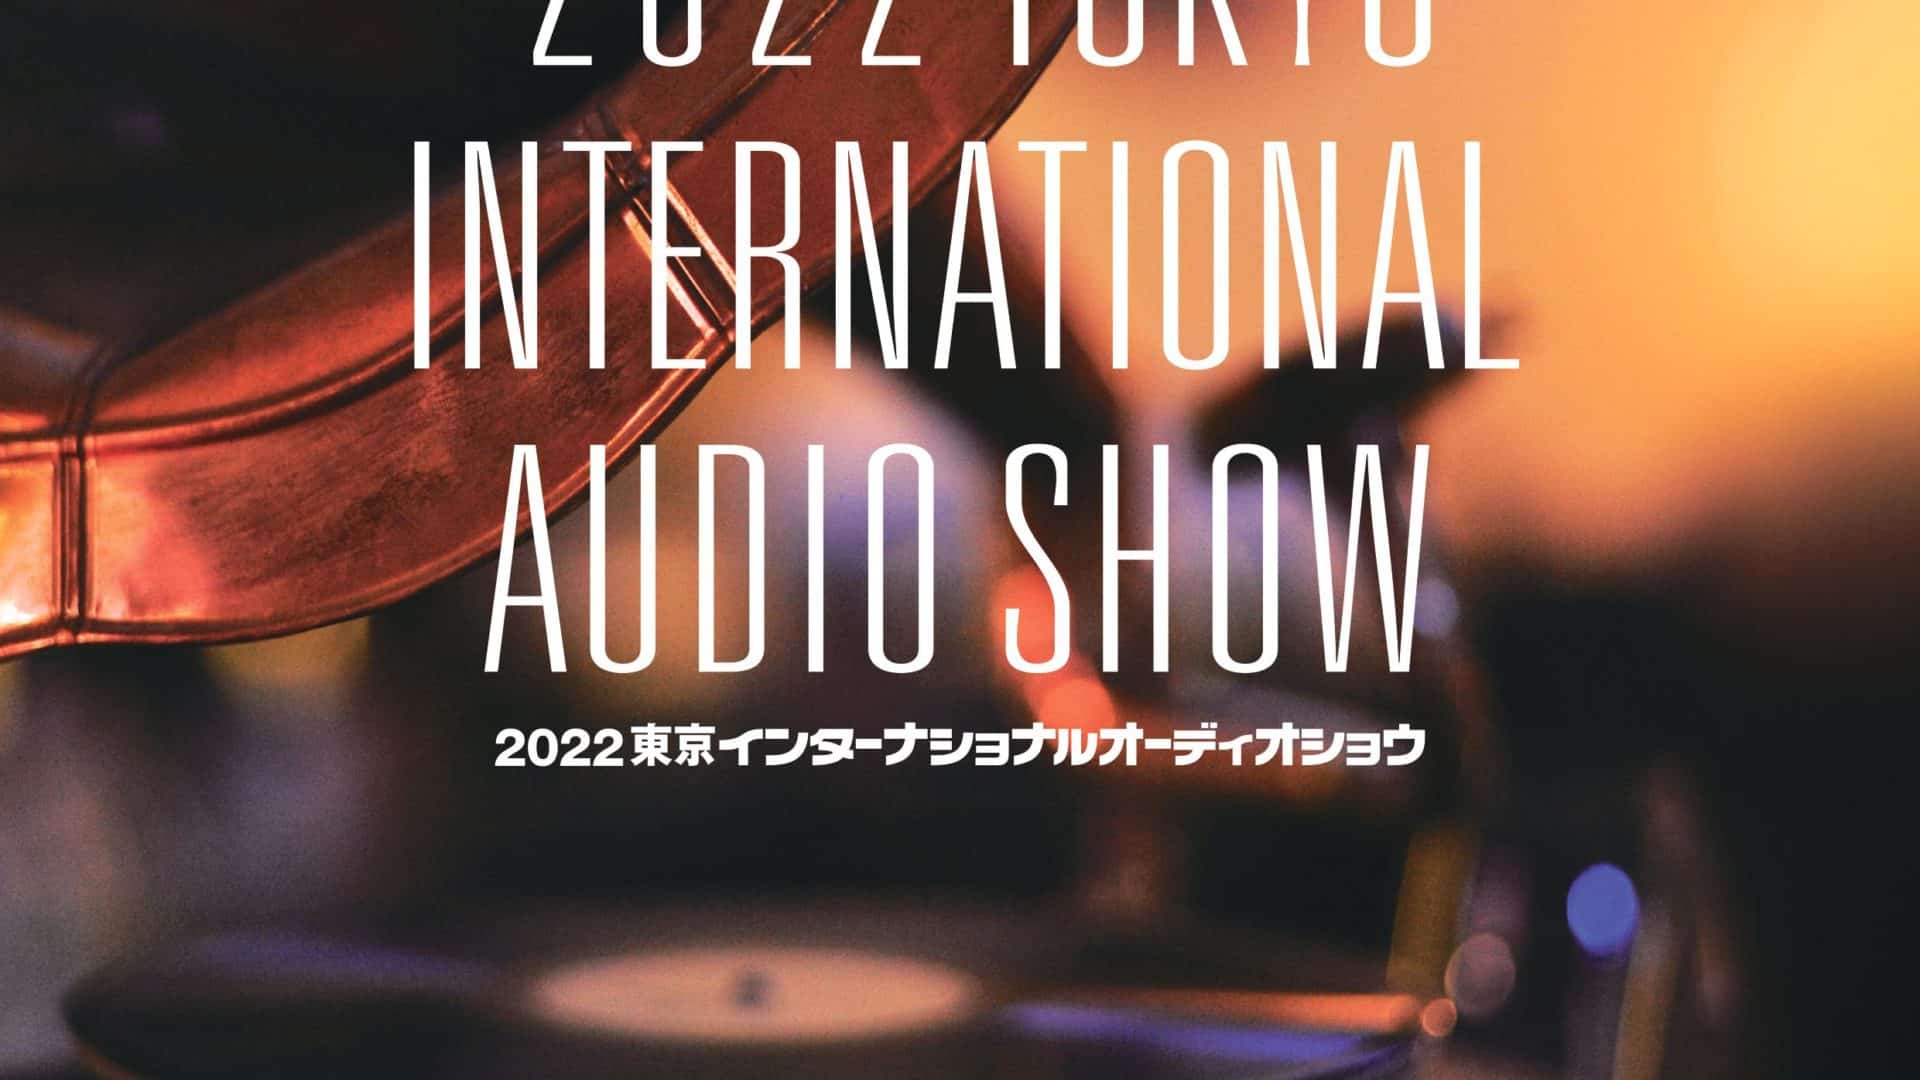 TIAS2022 Tokyo Show